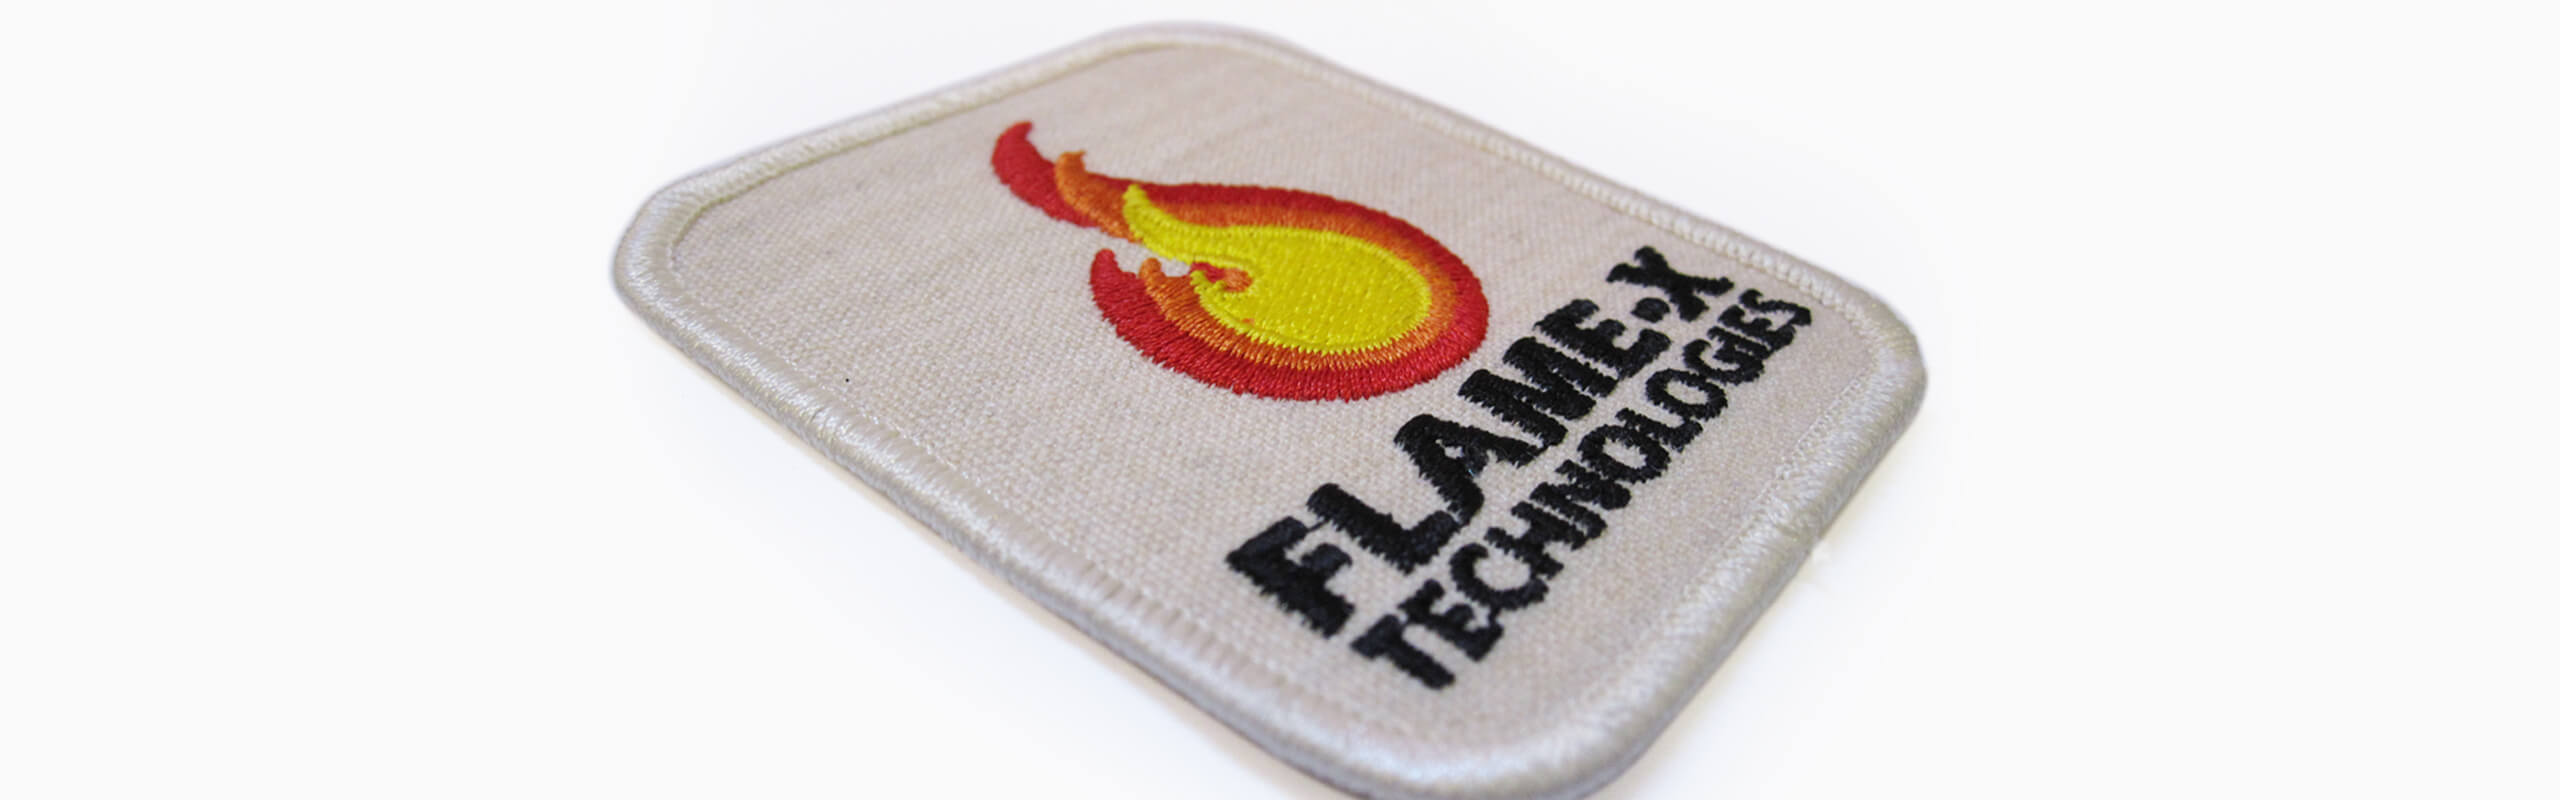 Embroidered Flame Resistant Emblems - Emblemtek